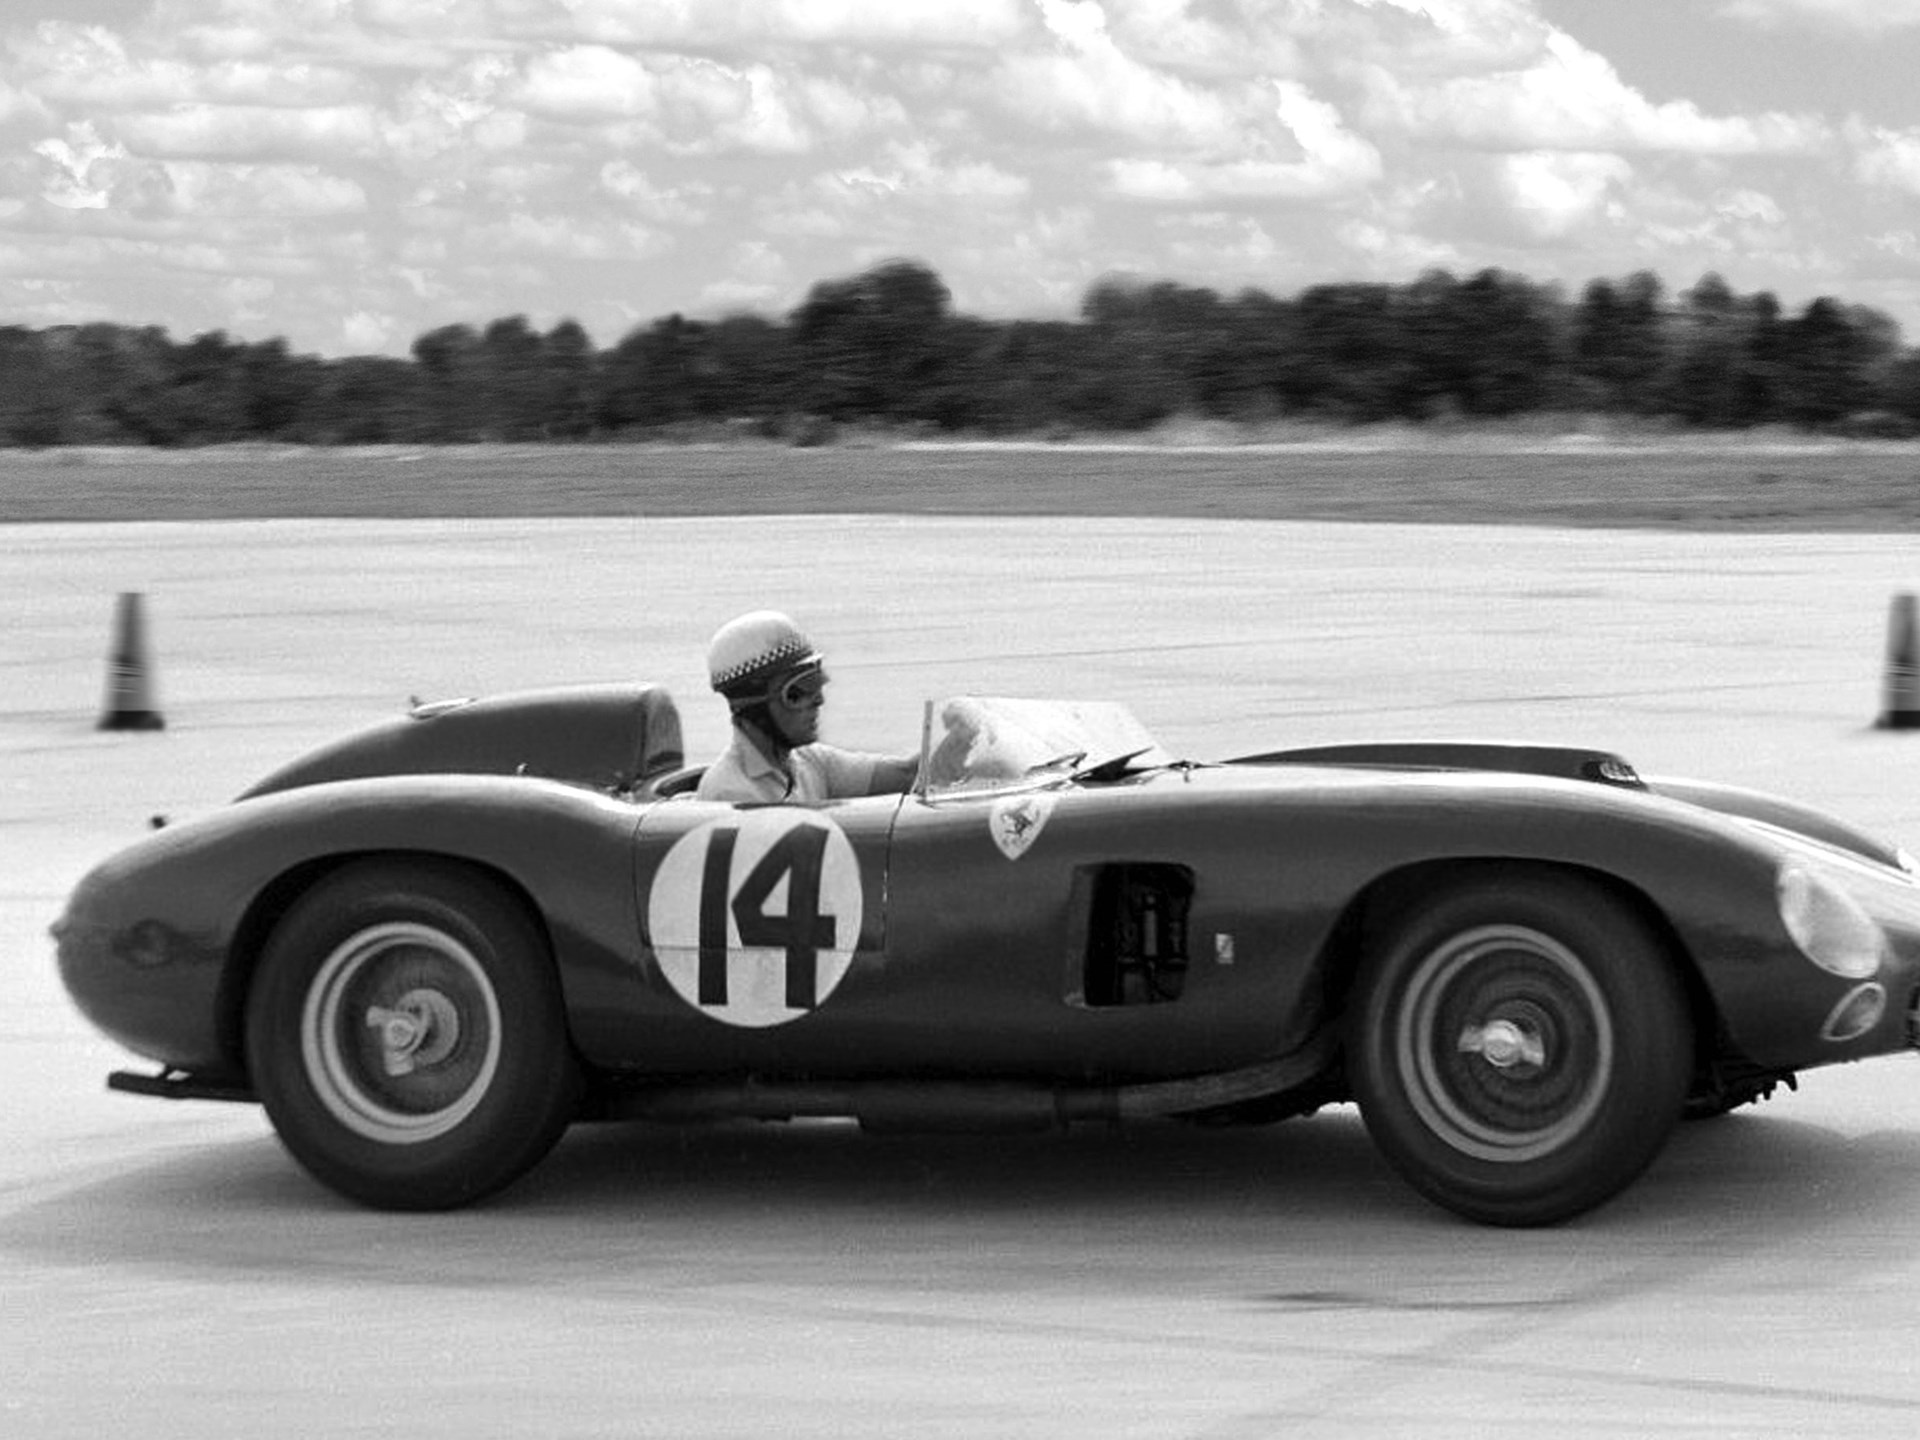 Ferrari 290 MM de 1956 conduzido por Fangio pode ser seu